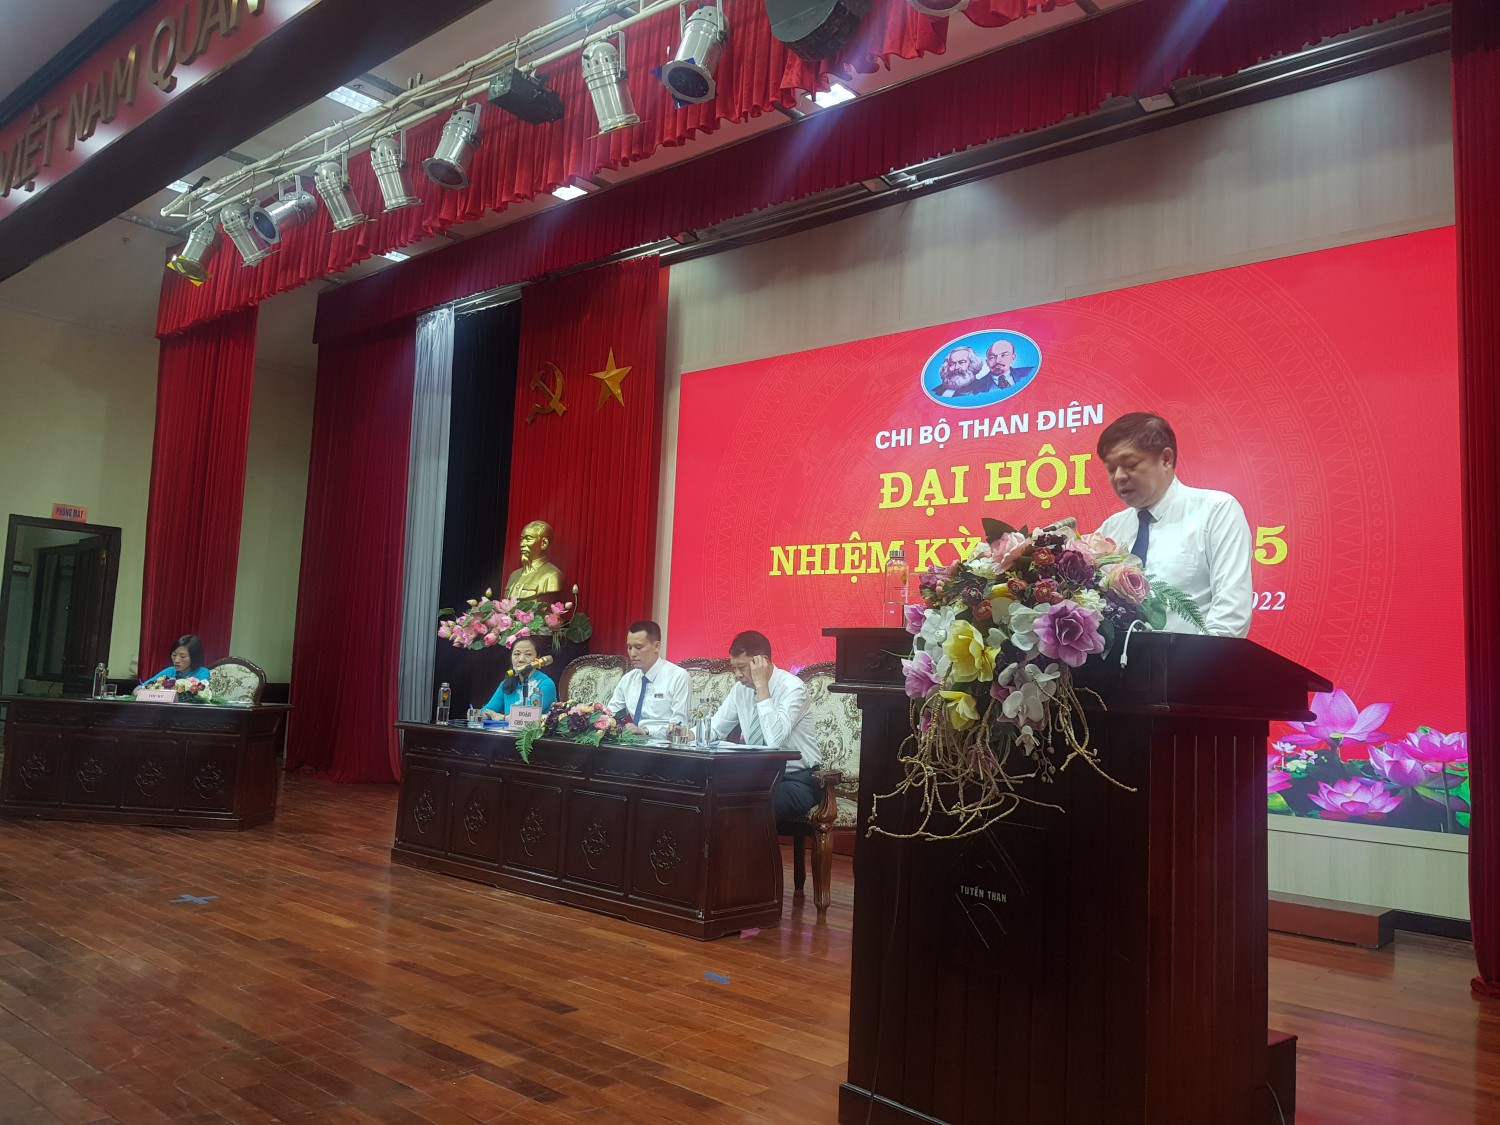 đồng chí Phạm Hồng Thanh – Bí thư Đảng ủy đã biểu dương những kết quả mà Chi bộ Than điện đã đạt được trong nhiệm kỳ 2020 - 2022